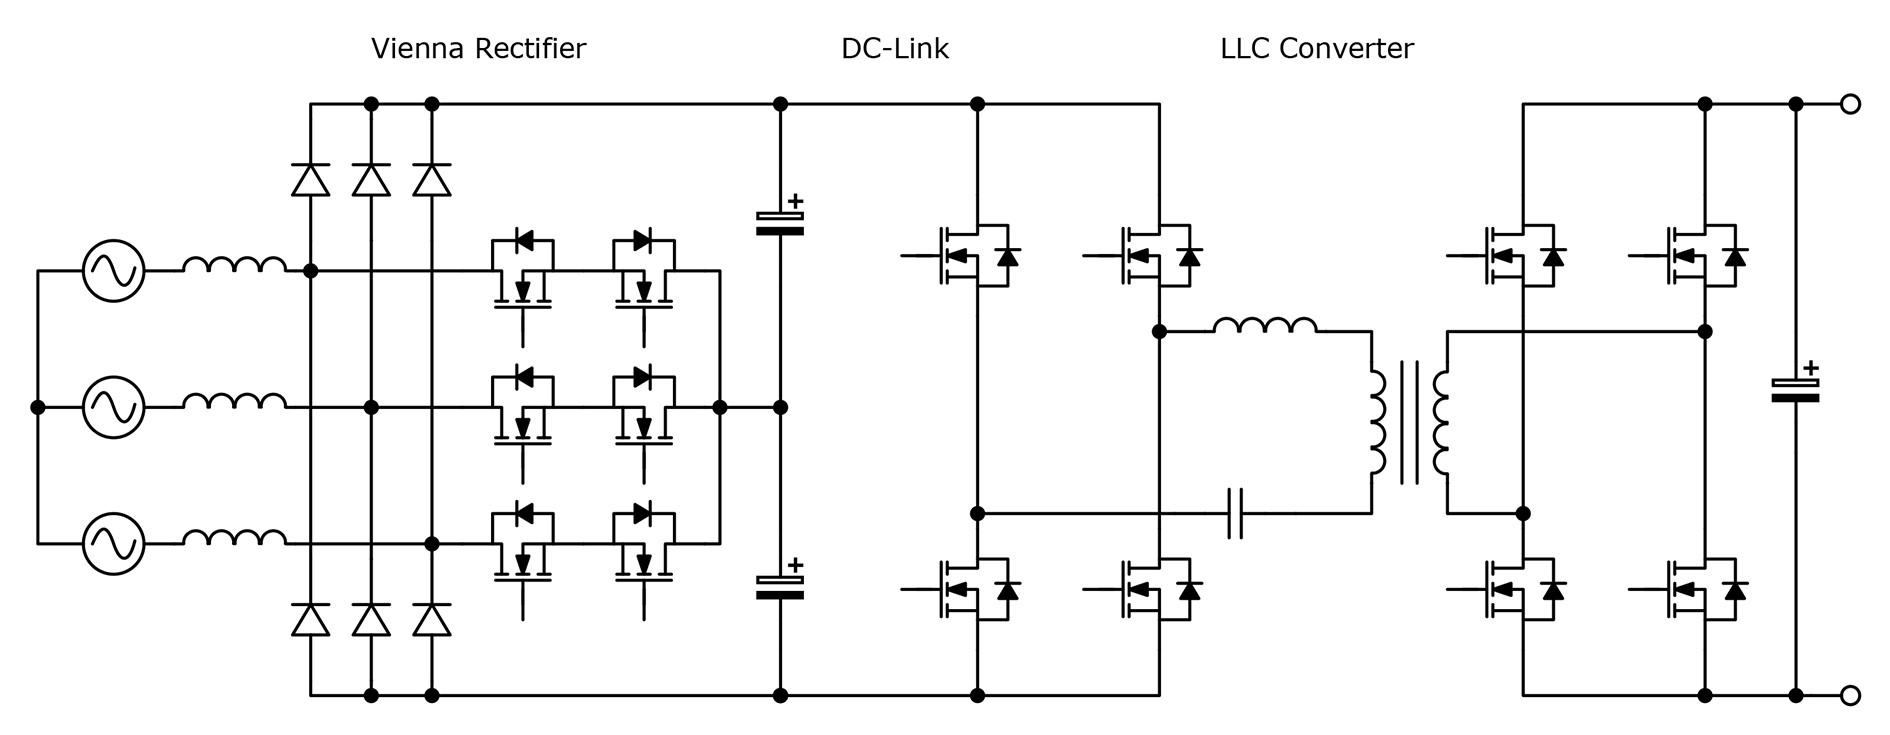 A typical DC EV charger arrangement